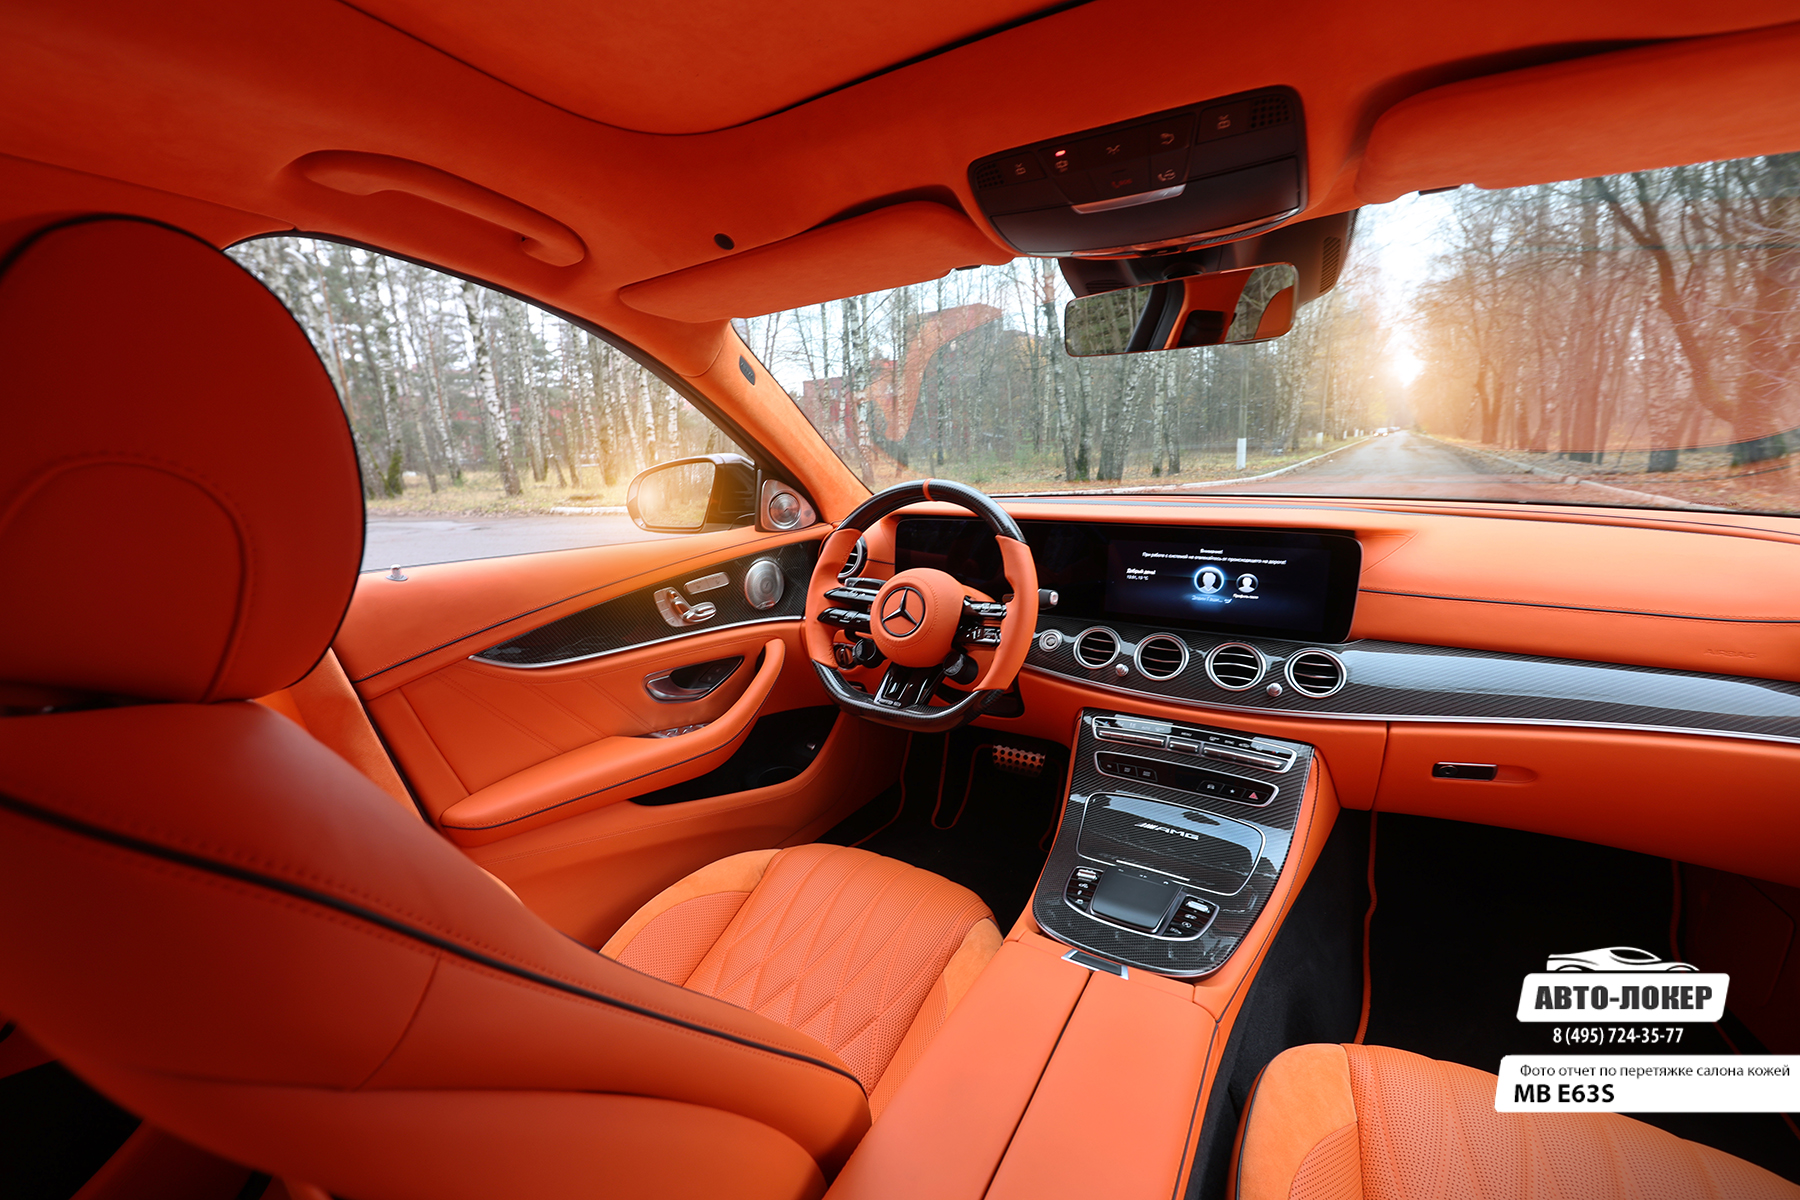 Перетяжка передних сидений с вставками алькантары салона MB E63S (W213) оранжевой кожей